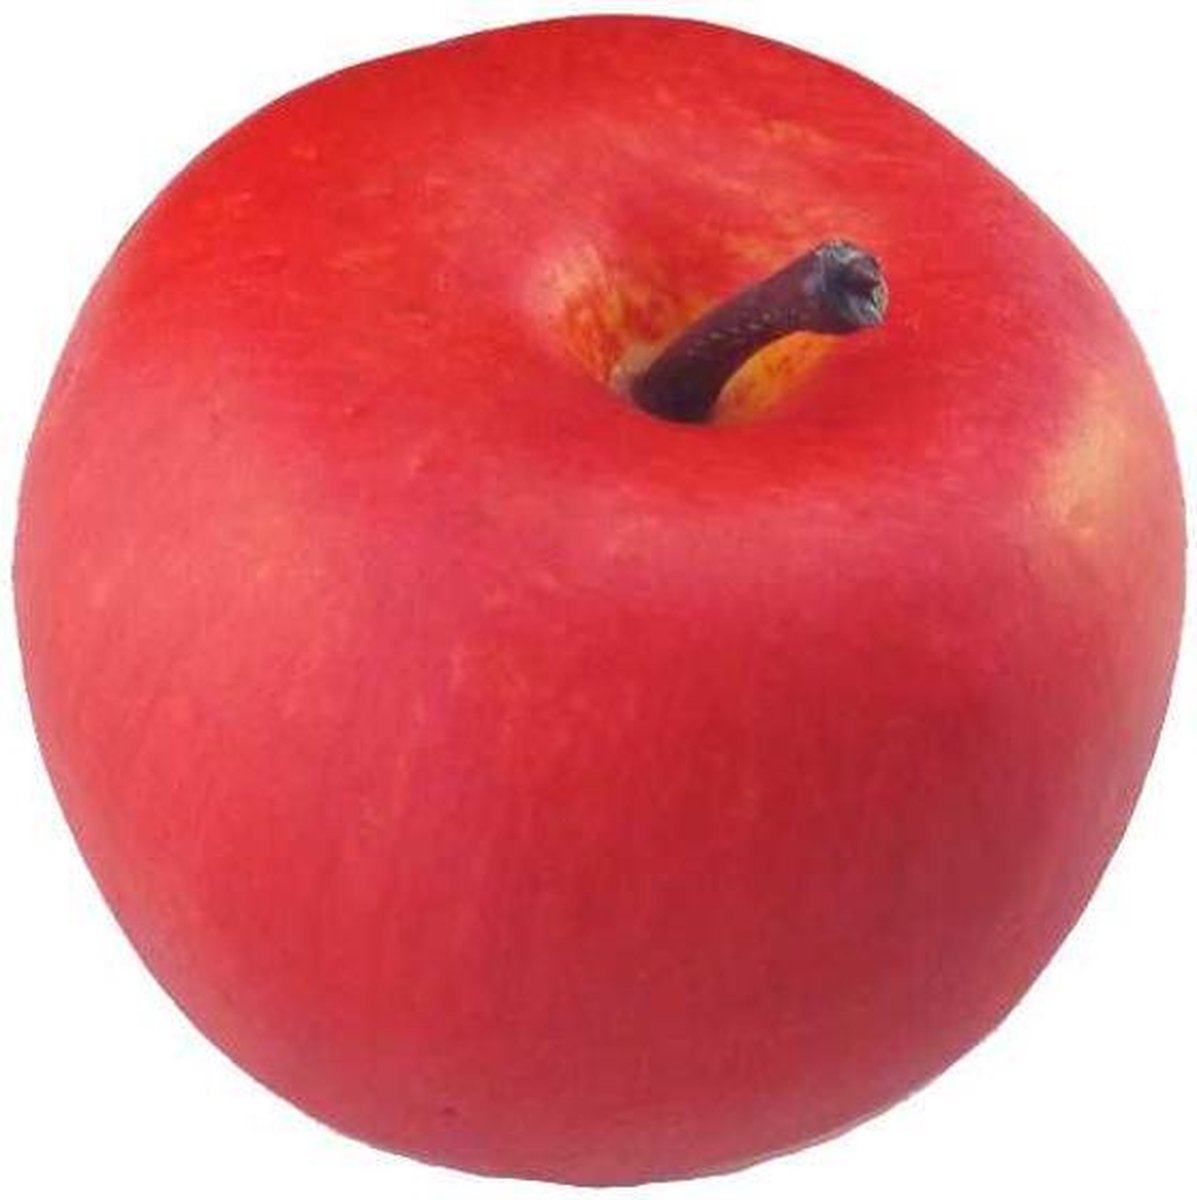 elke dag Structureel Perforatie Namaak rode appel - kunststof appels - decoratie appel - per 3 stuks -  diameter 6,5 cm | bol.com